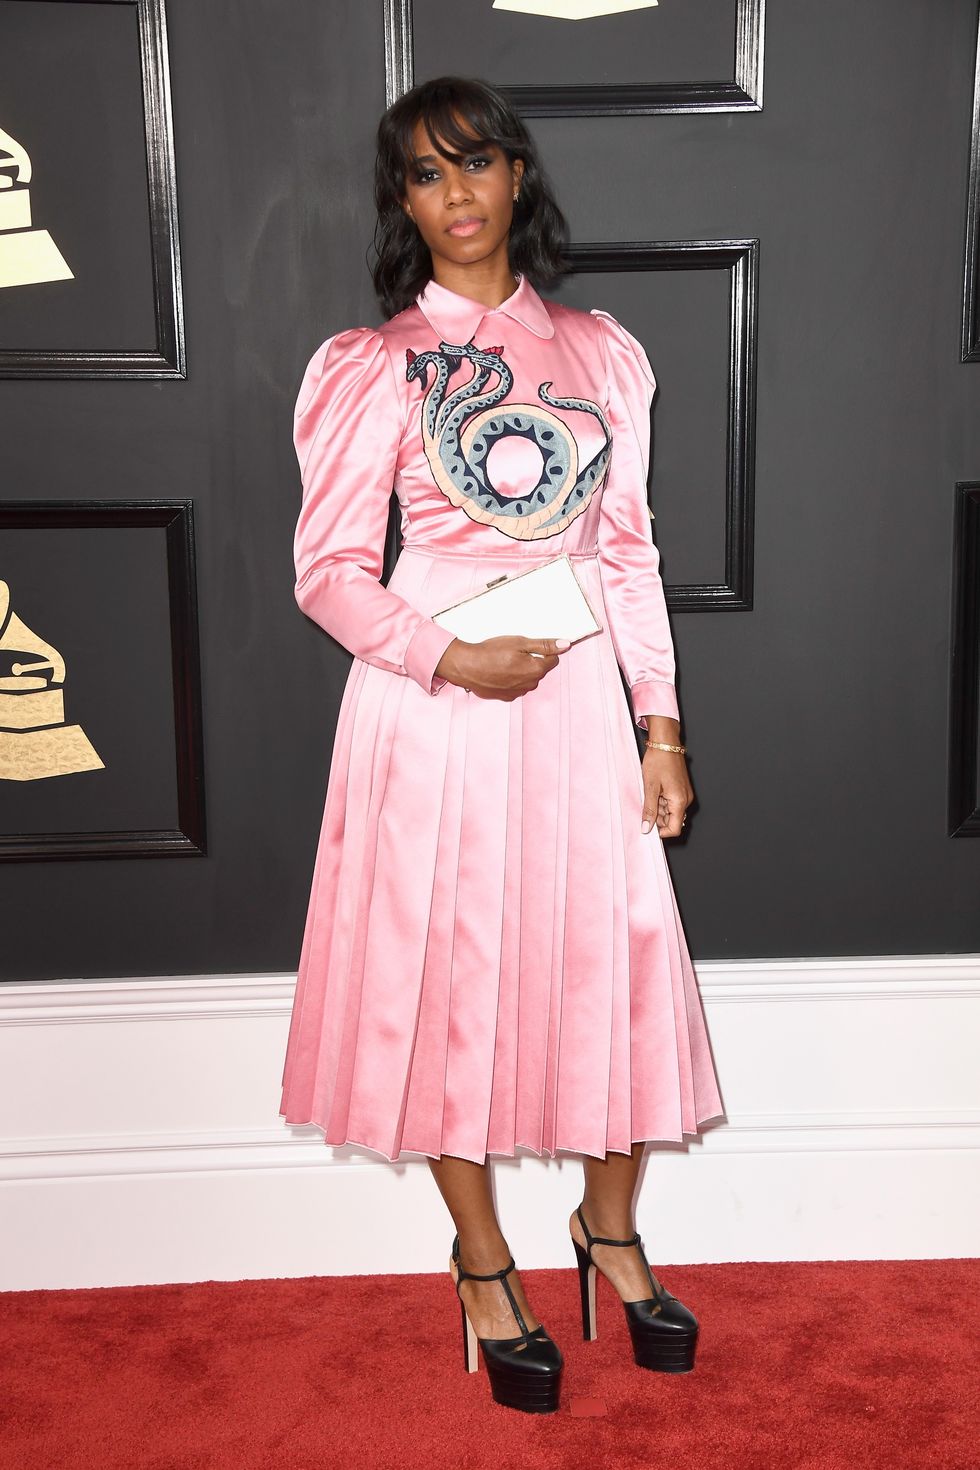 Beyoncé non ha fatto il red carpet ai Grammy Awards, ma è assente giustificata: ecco perchè non è tra i look avvistati sul tappeto rosso